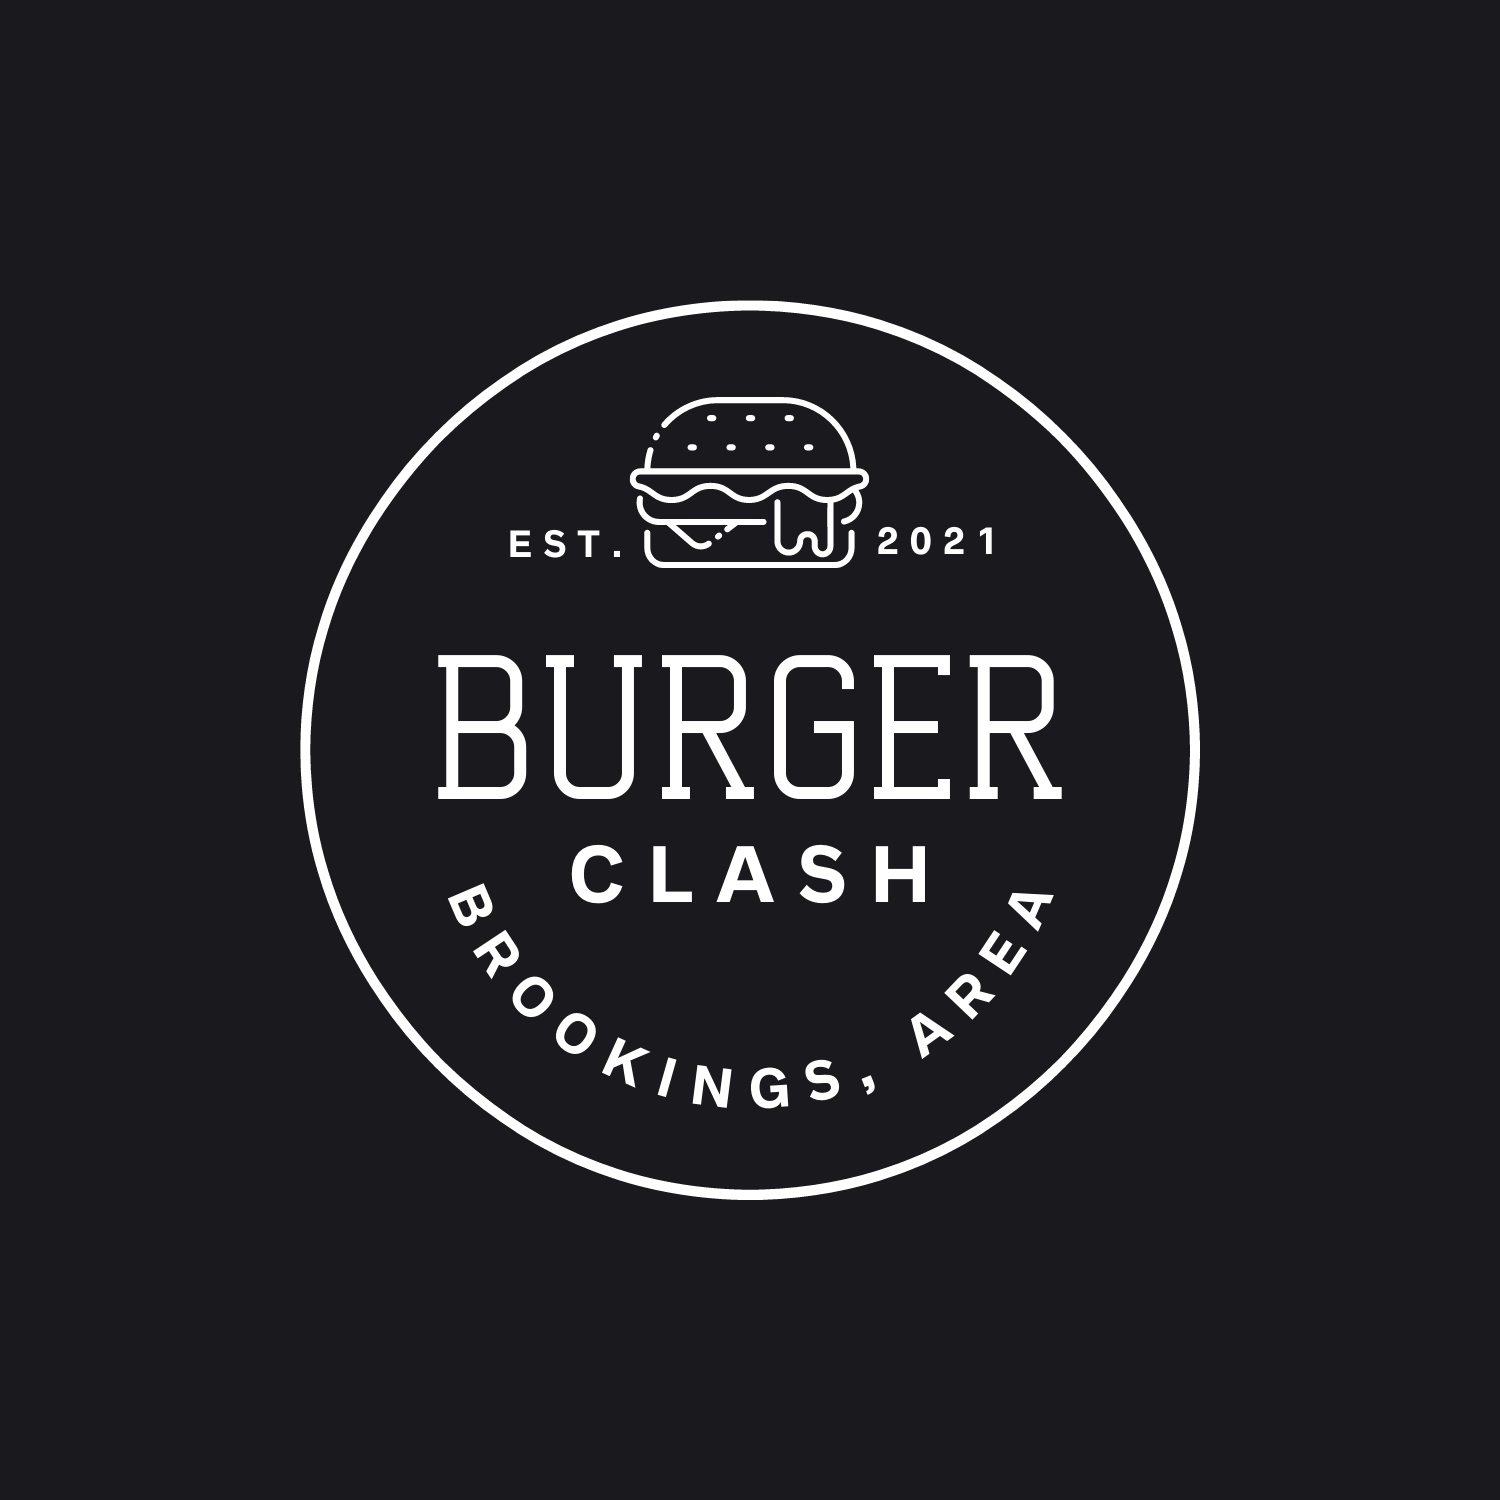 Brookings Area Burger Clash Begins